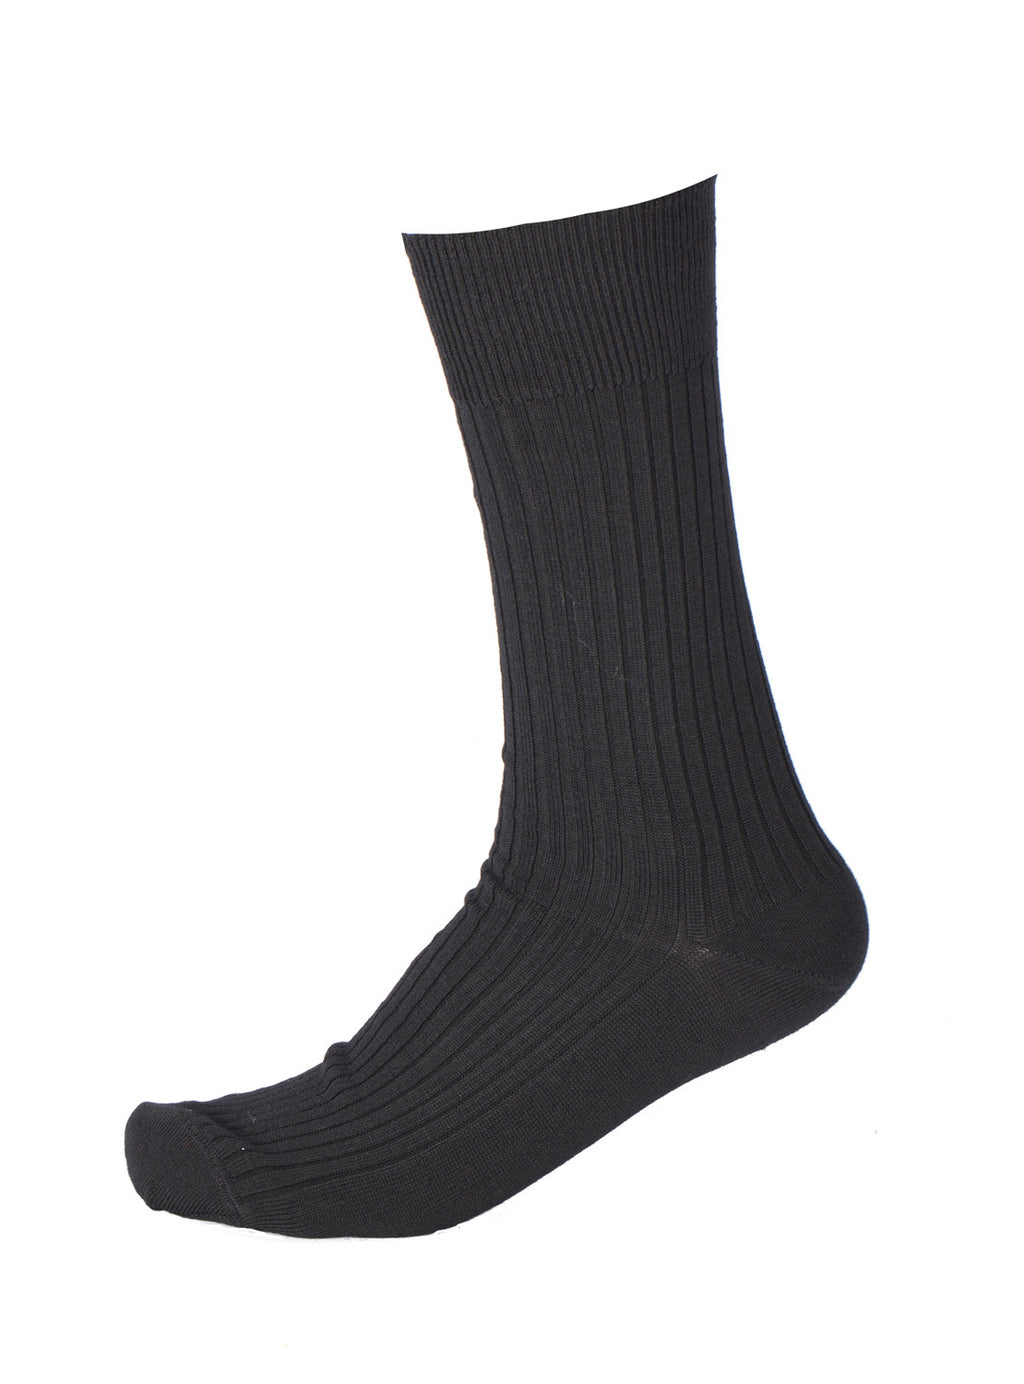 Pussyfoot Socks — socksforliving.com